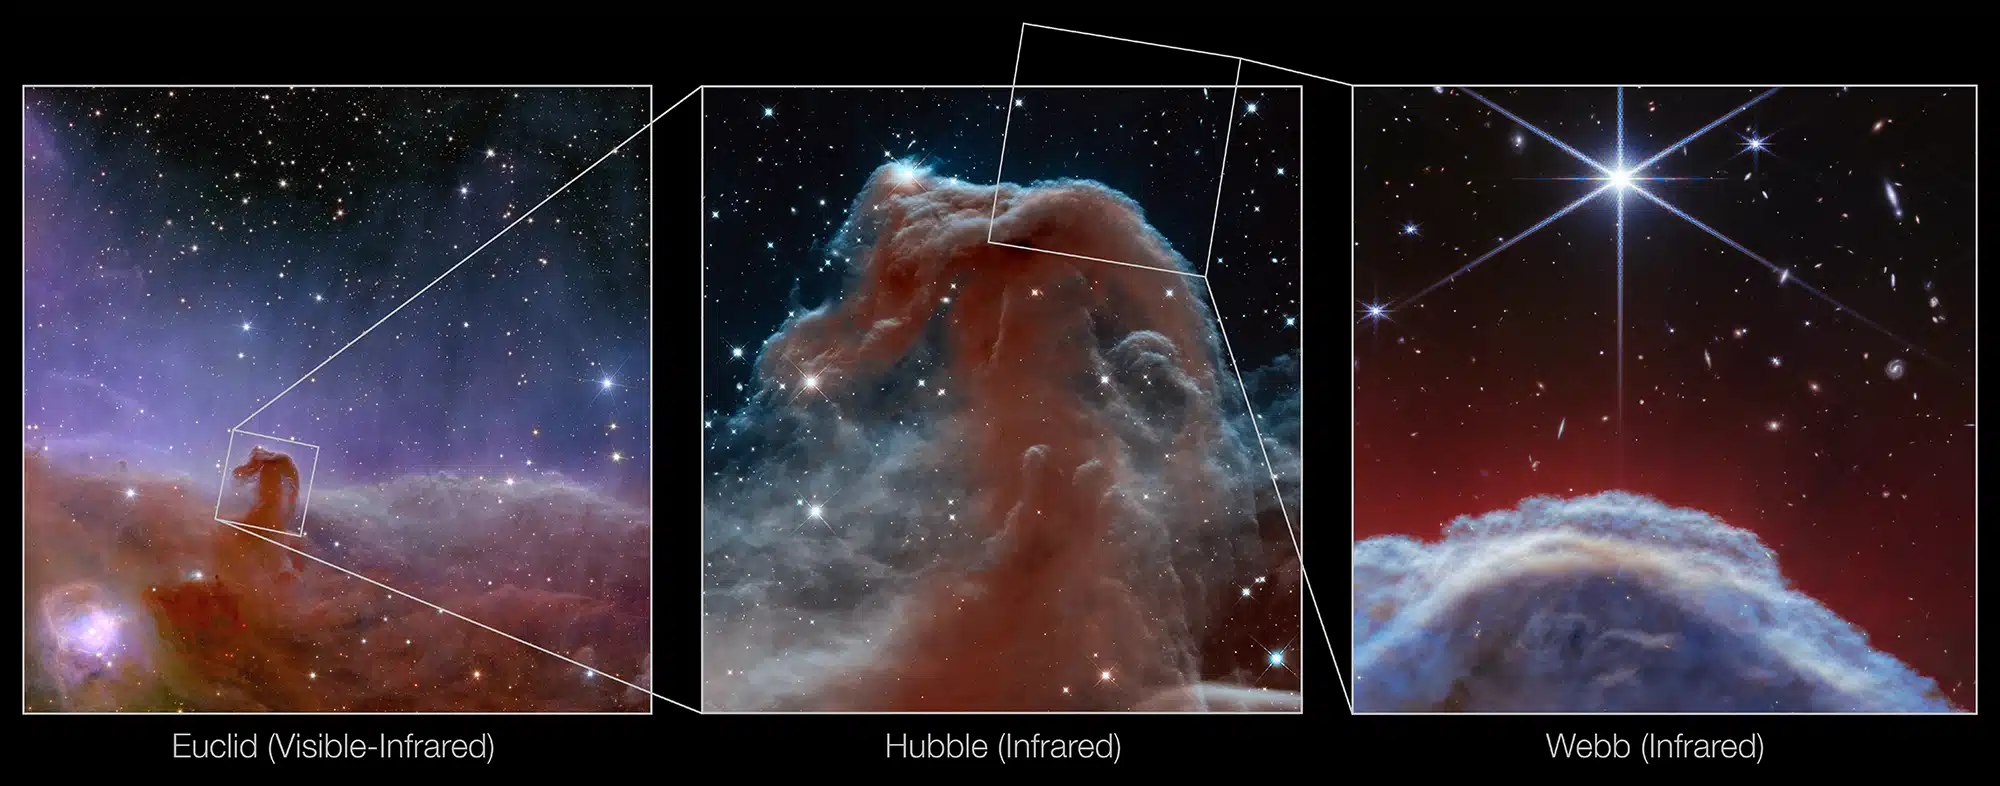 התמצאות - הצילום של ווב התמקד בקטע מ"רעמת" ערפילית ראש הסוס. את התמונה הגדולה יותר ניתן לראות בתמונות של טלסקופי החלל אוקלידס והאבל. קרדיט: NASA, ESA, CSA, K. MISSELT (UNIVERSITY OF ARIZONA) and A. ABERGEL (IAS/UNIVERSITY PARIS-SACLAY, CNRS)